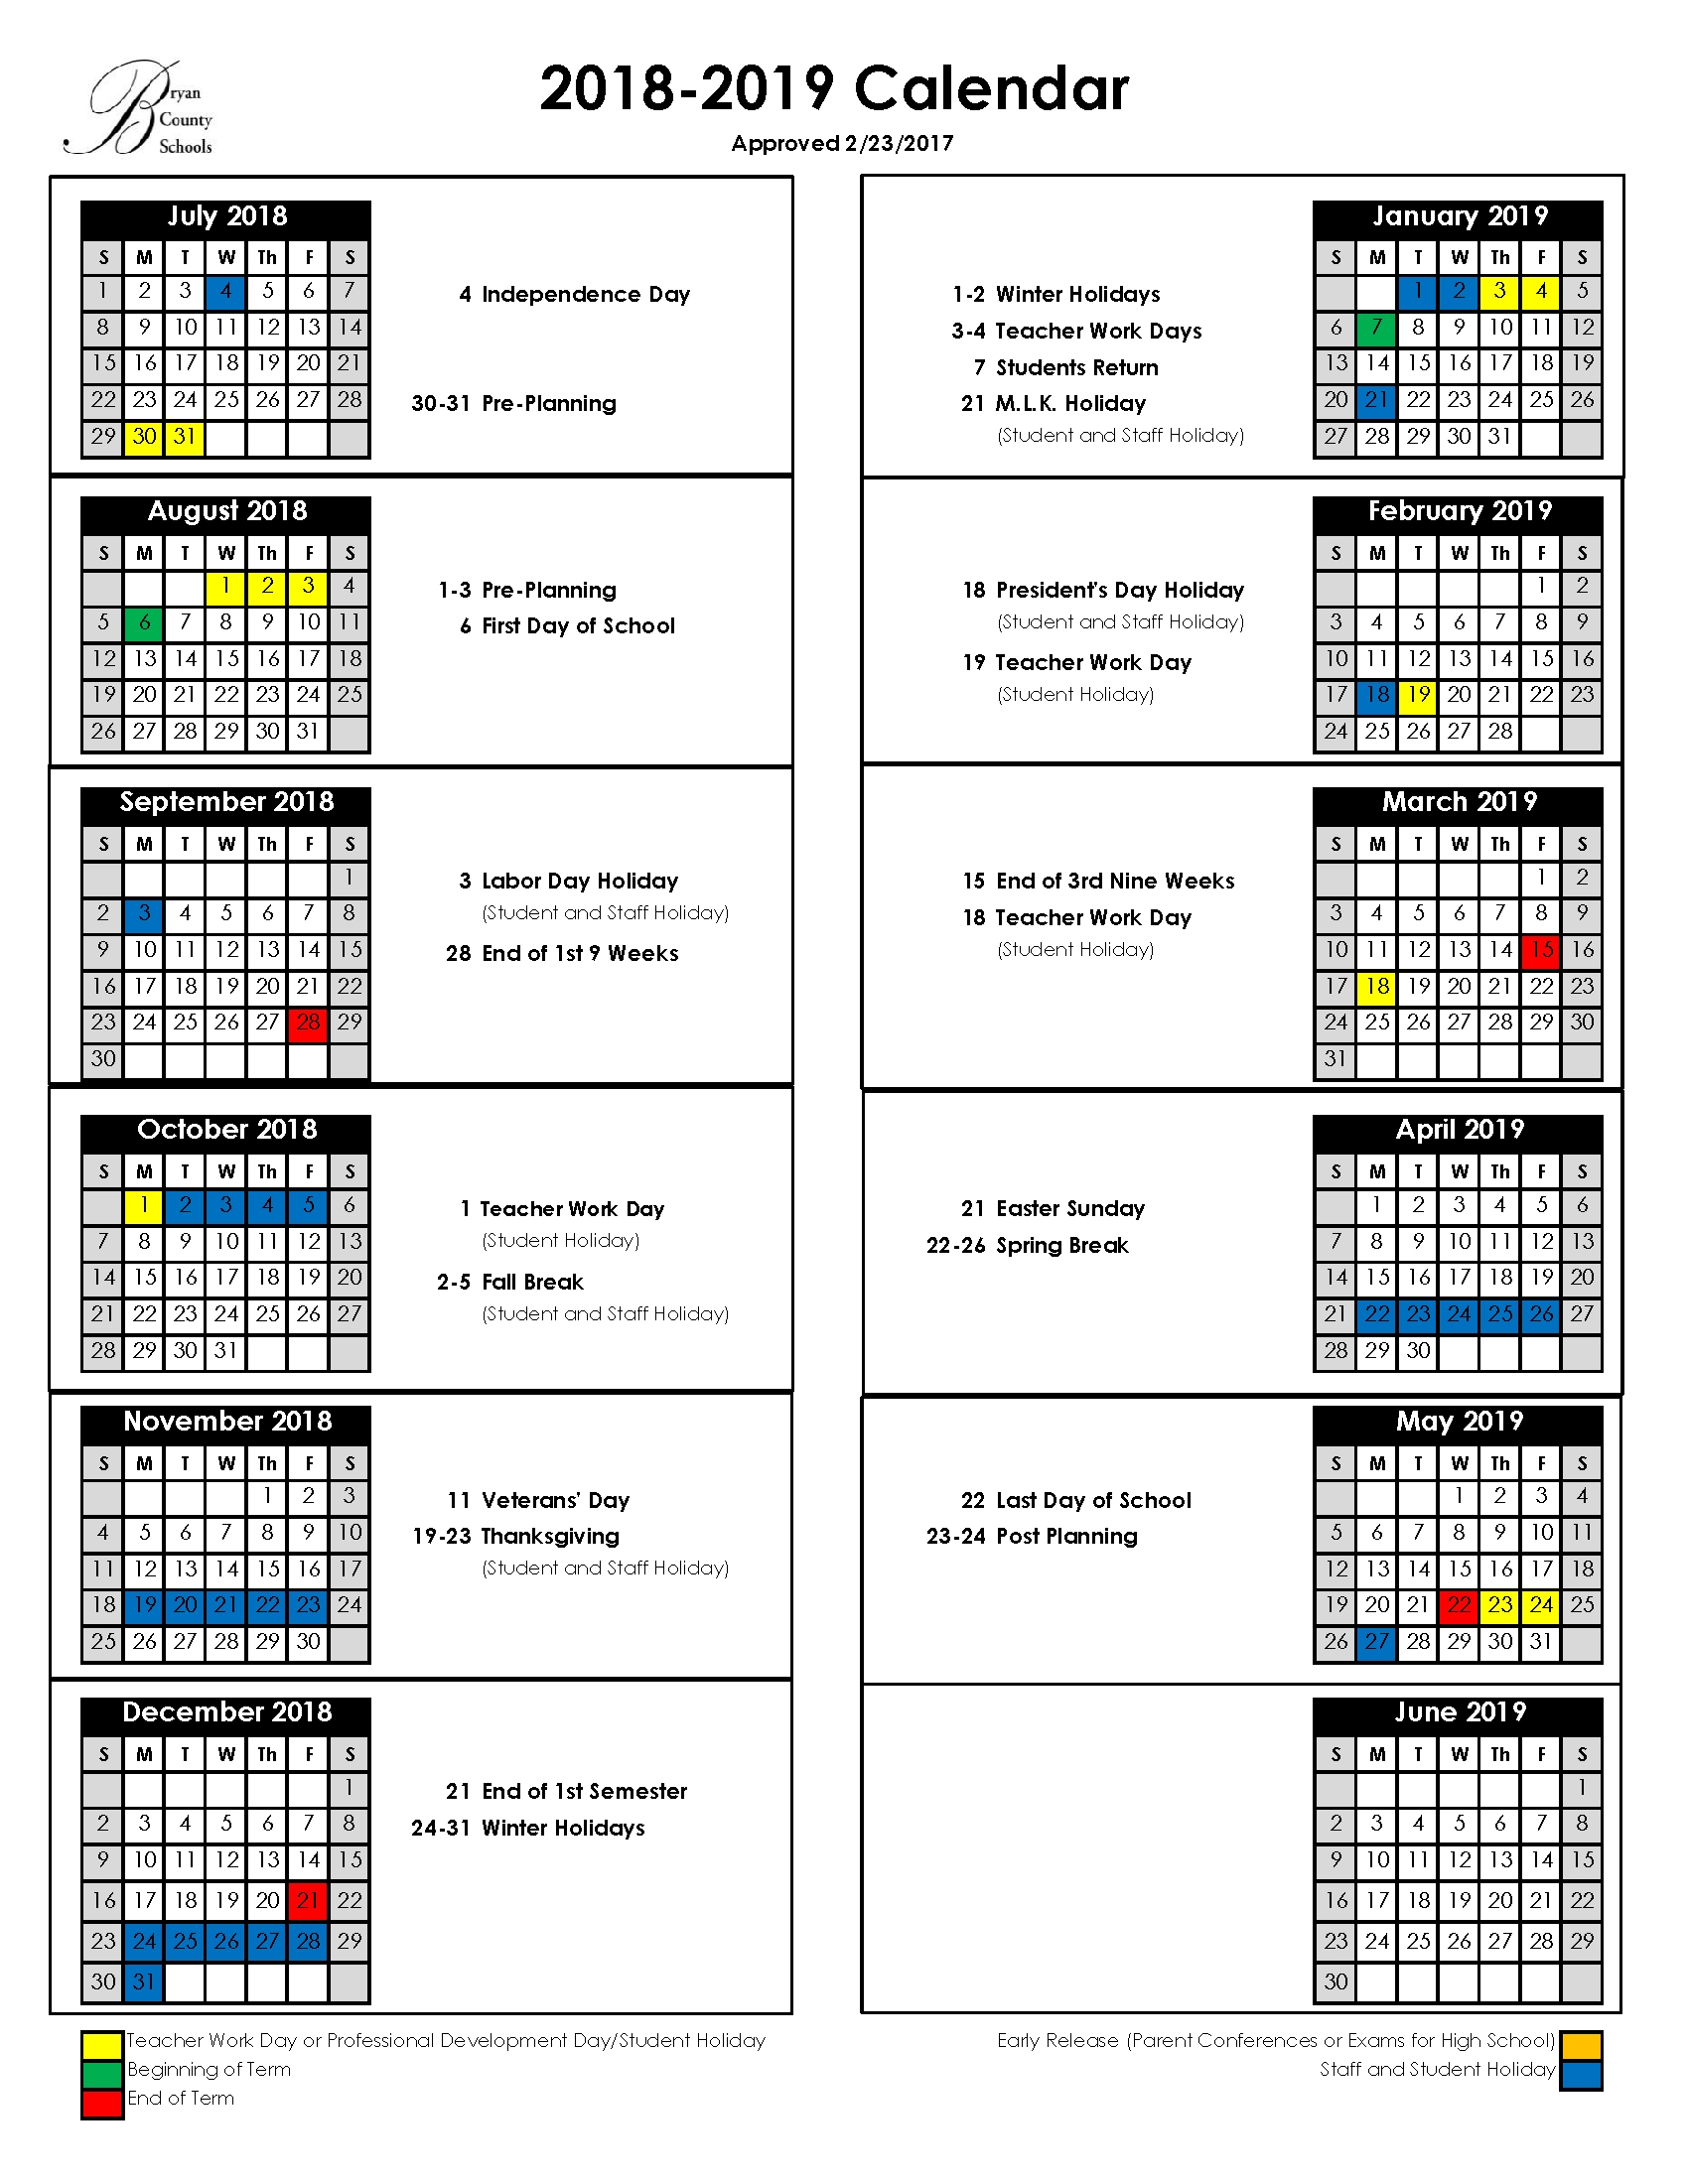 Bryan County Schools Is 7 School Calendar